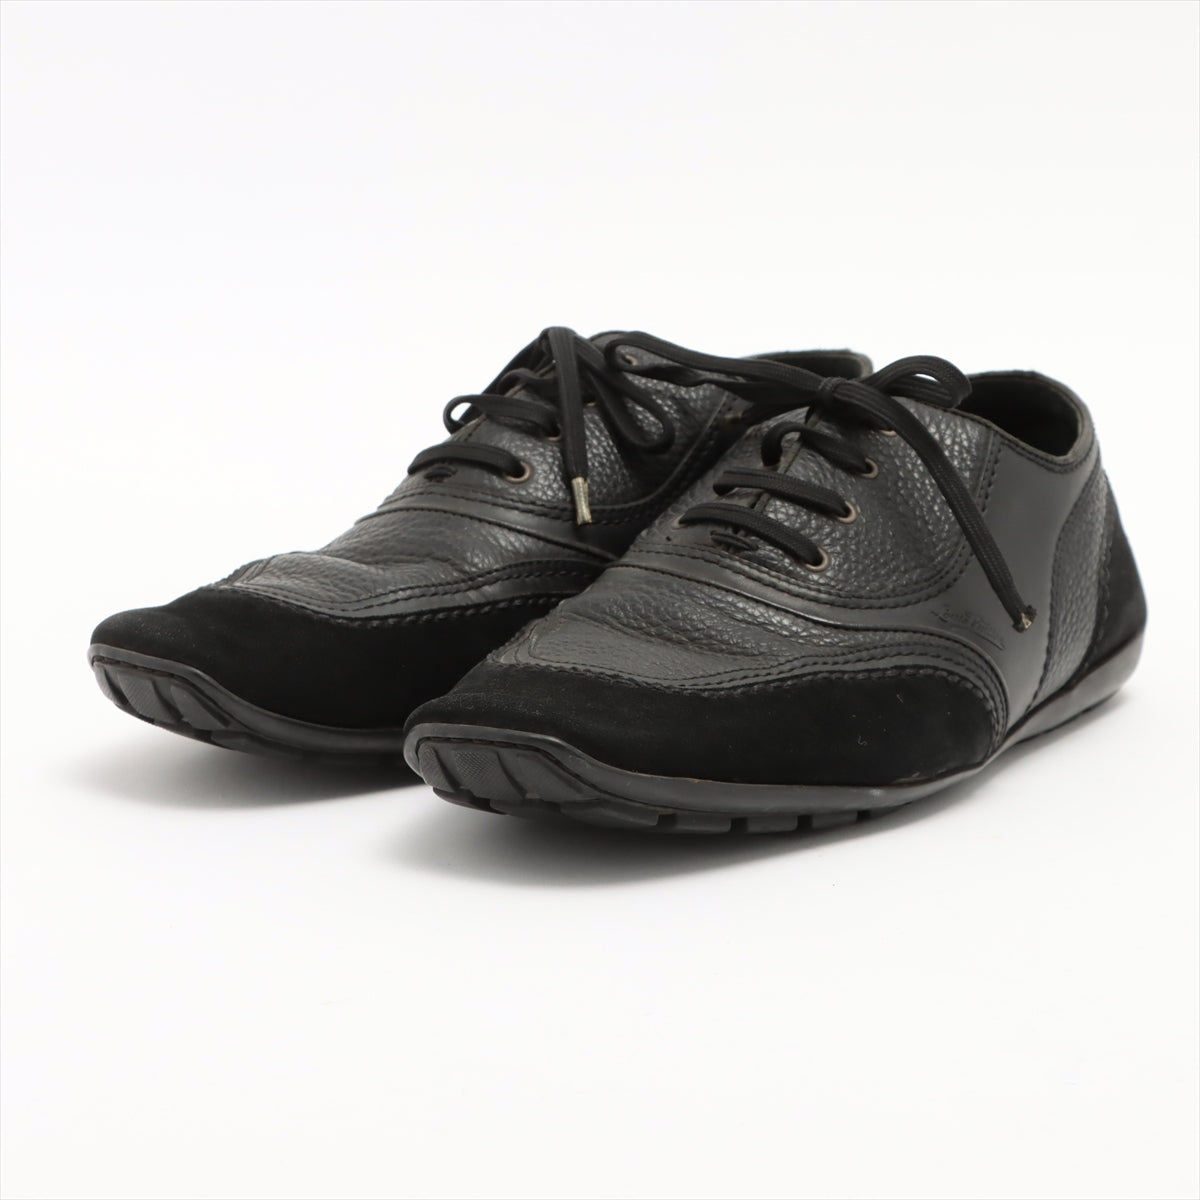 Louis Vuitton 06 Leather & Suede Leather shoes 8 Men's Black FA0046